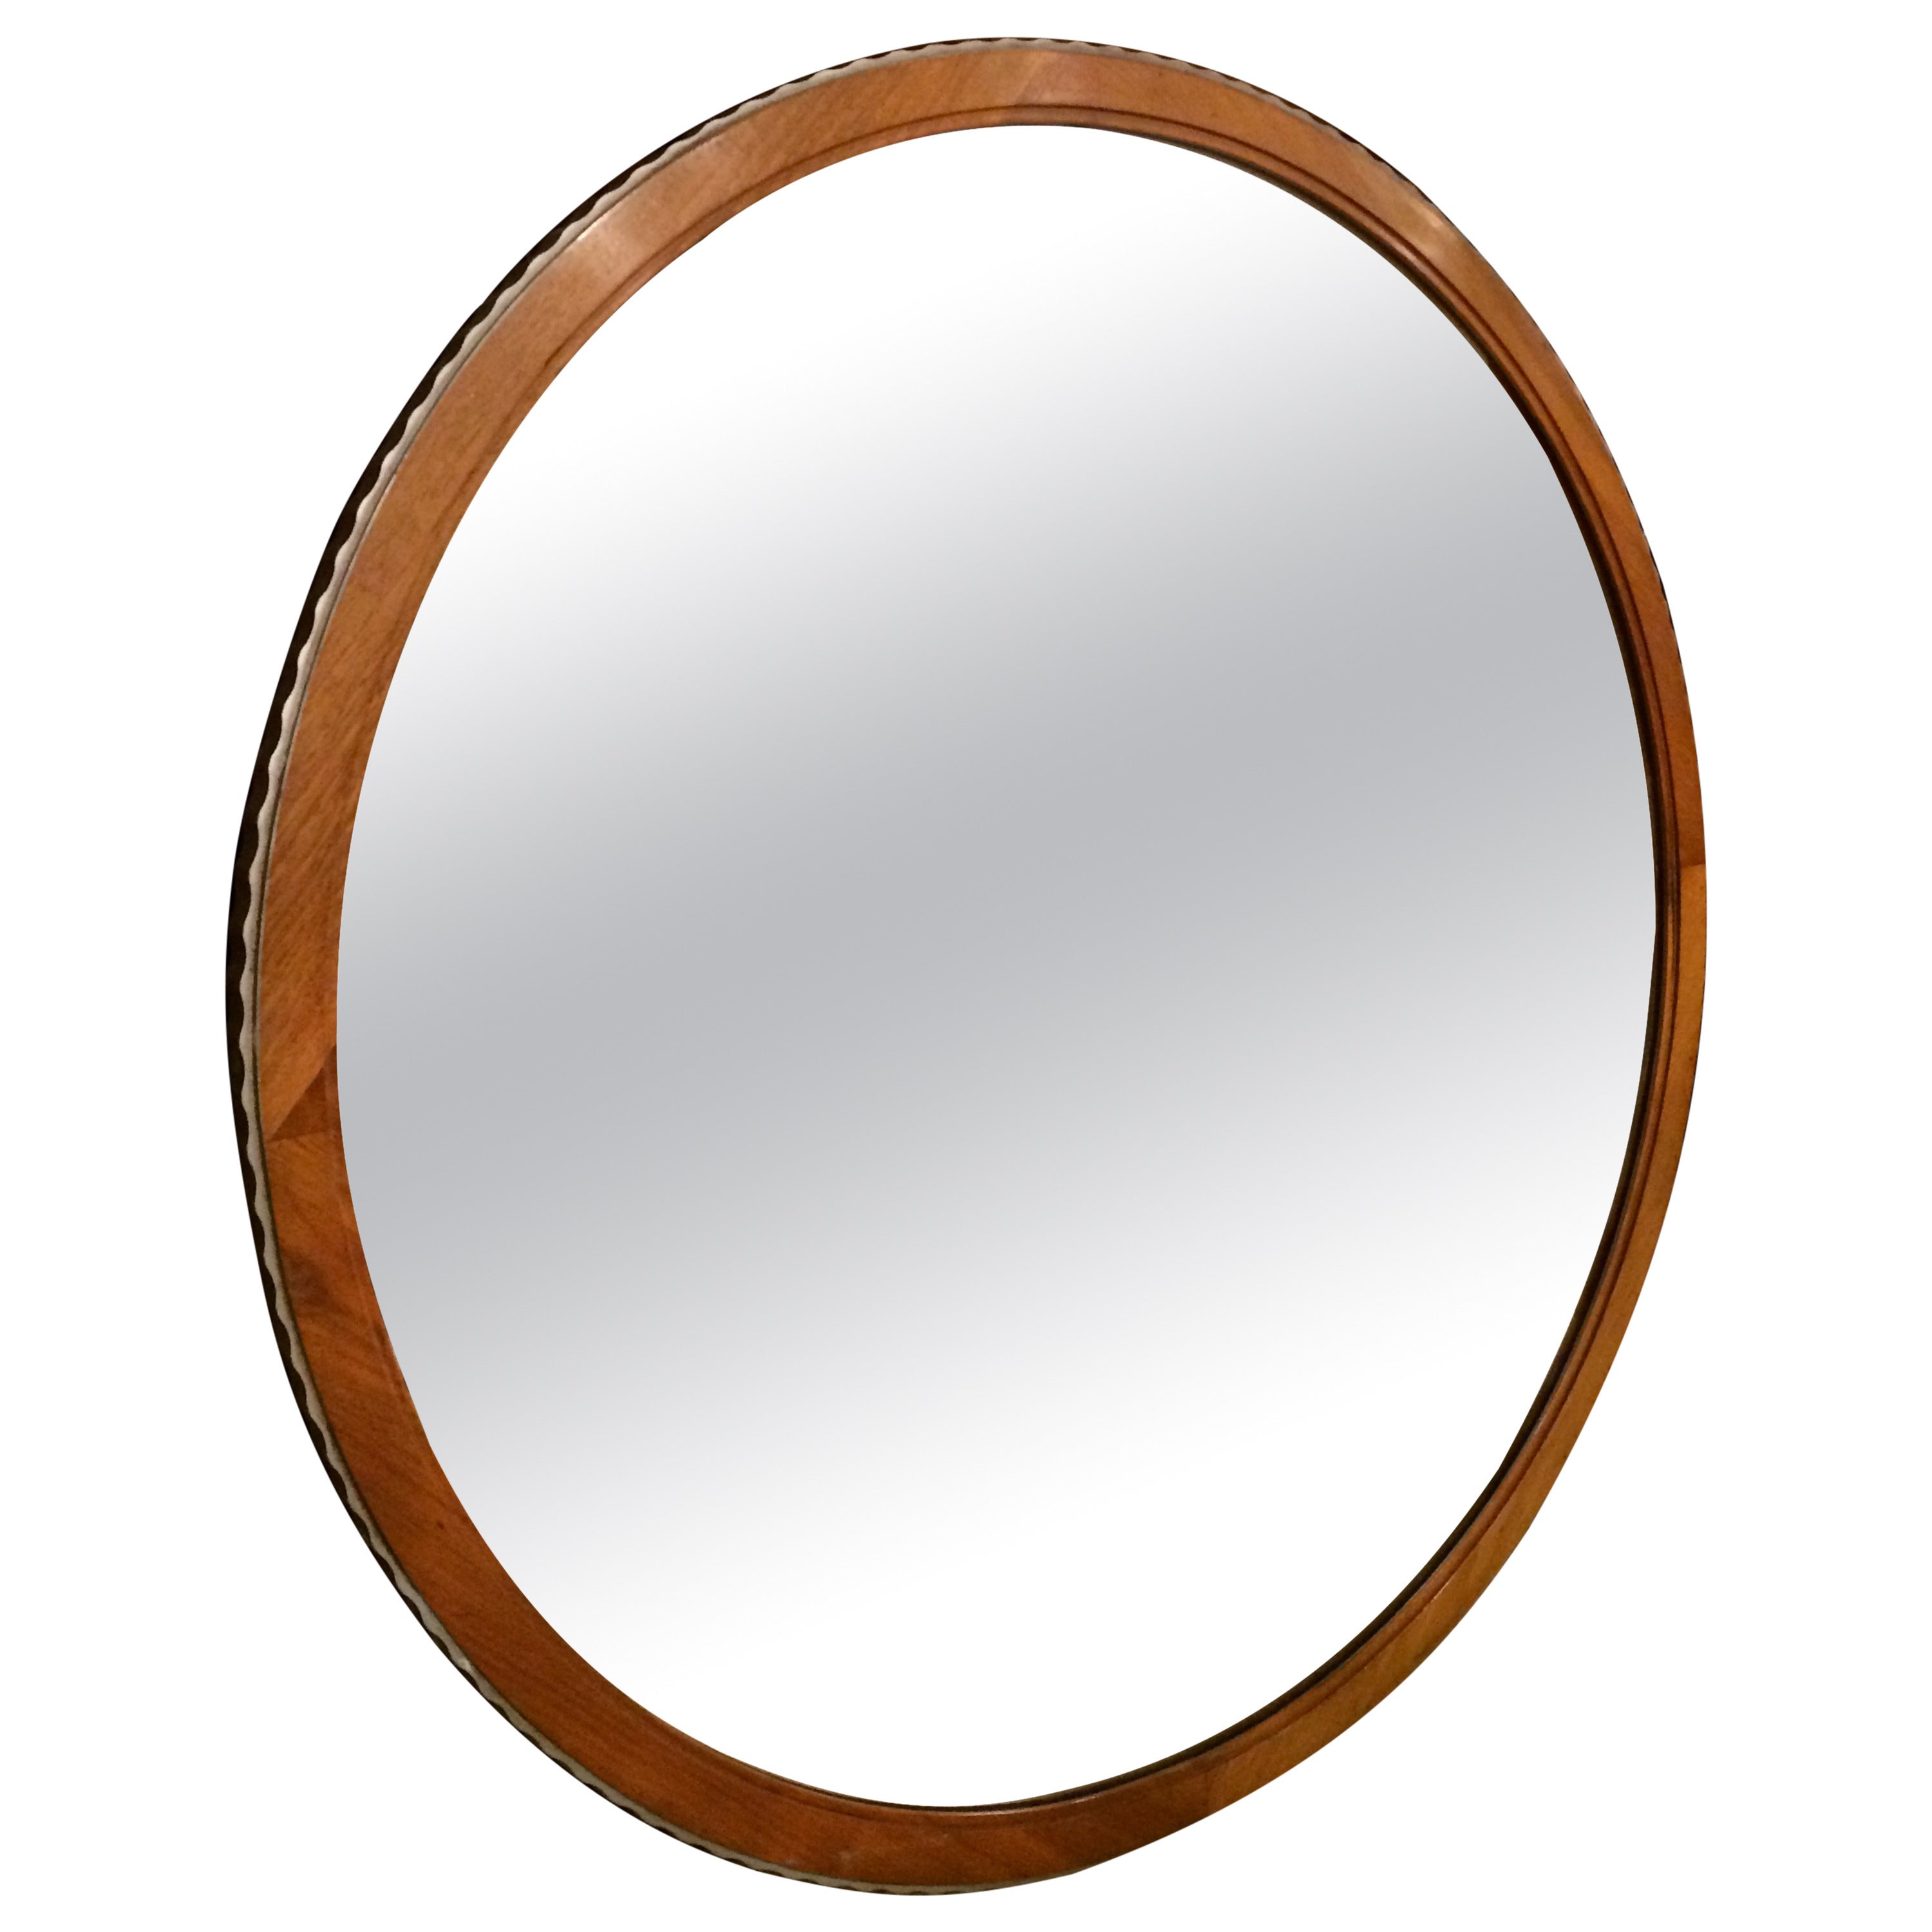 Modernist Round Mirror